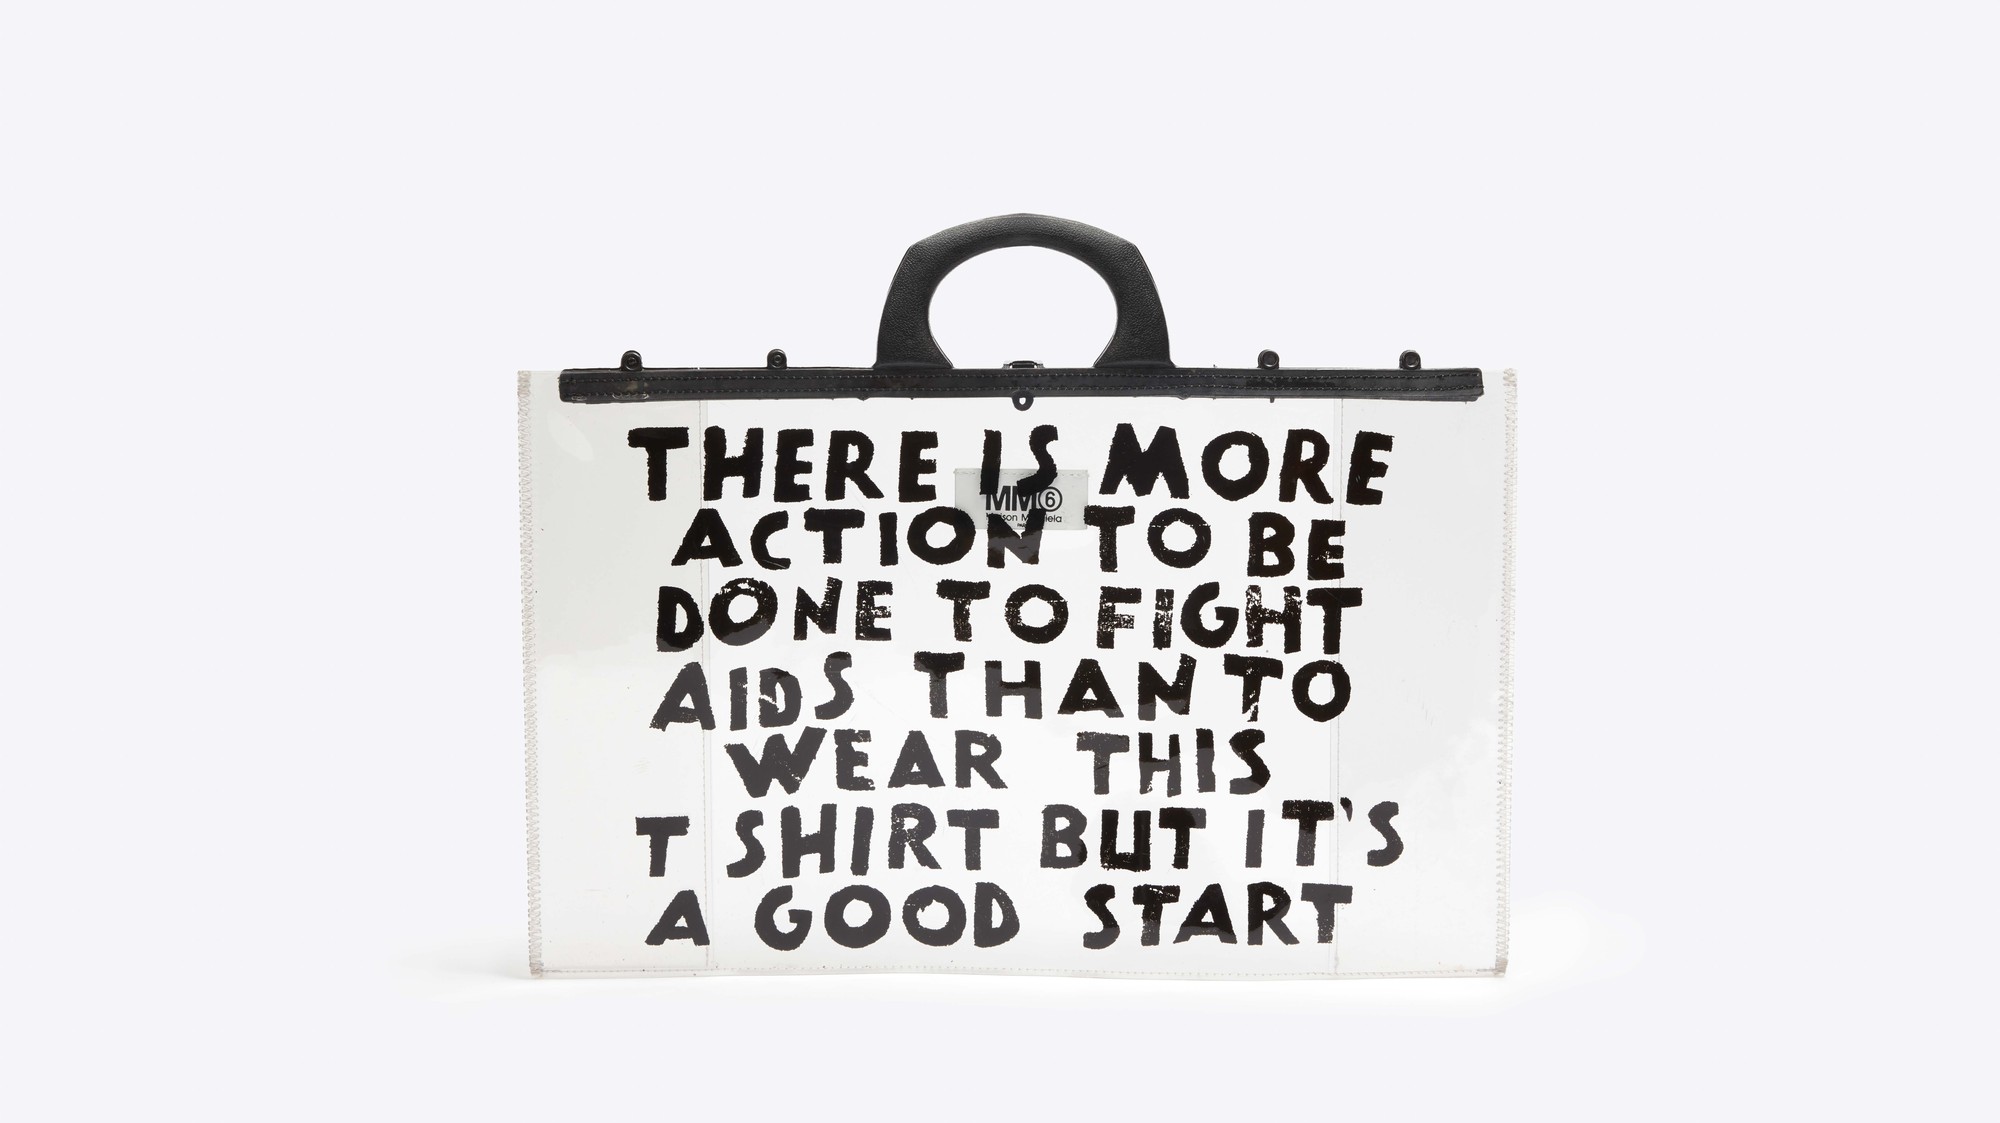 MM6 Margiela rerelease iconic charity AIDS t-shirt - i-D